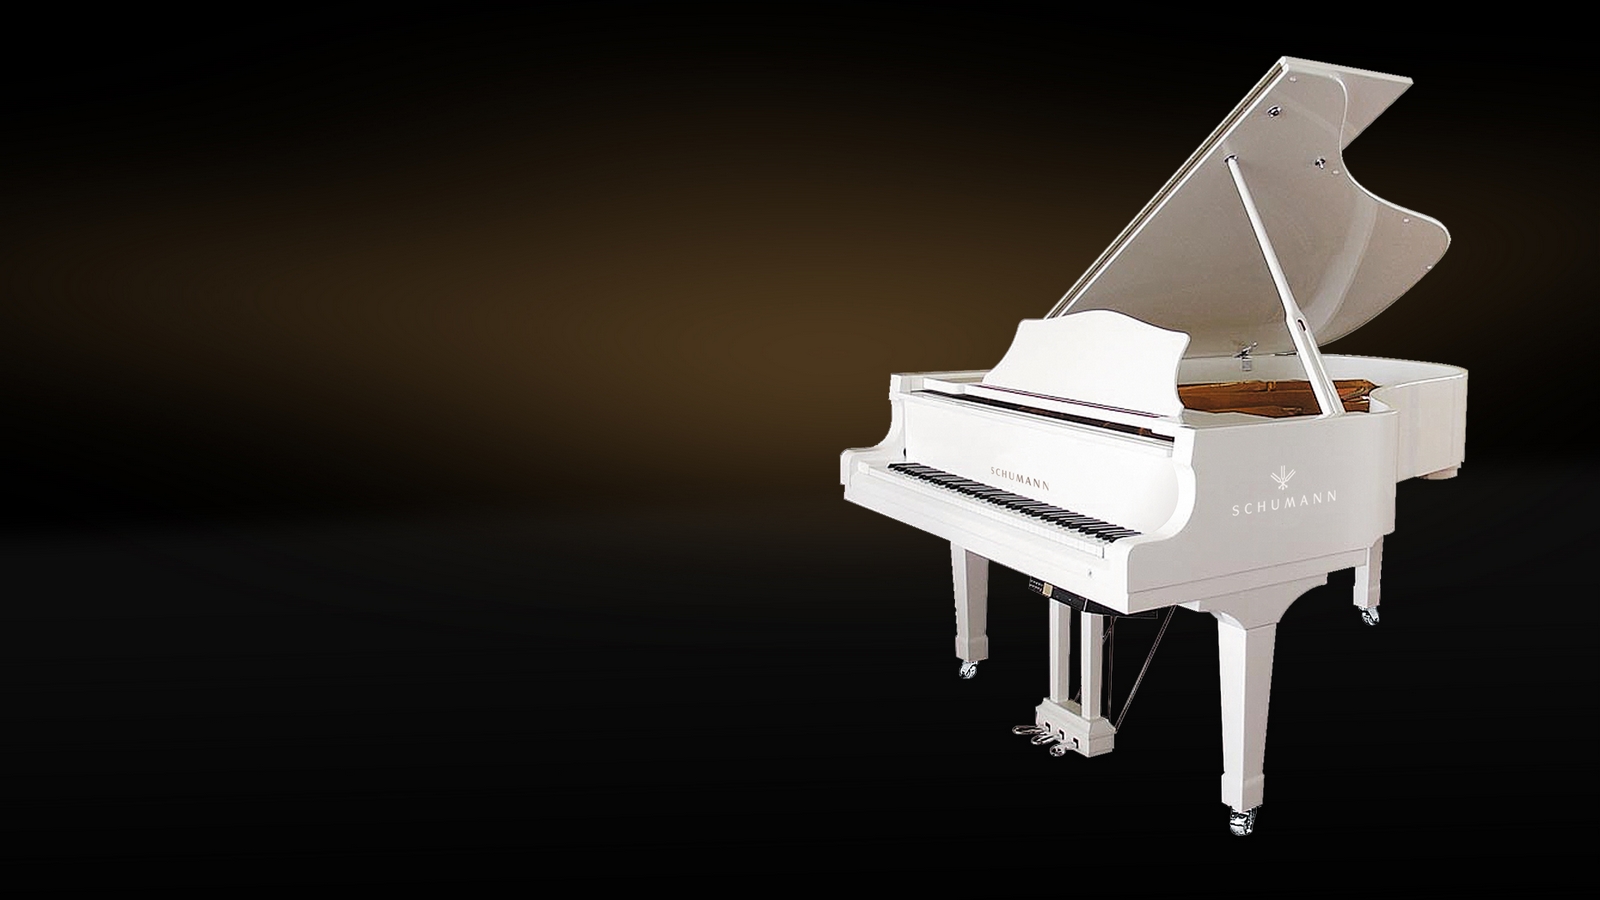 Il pianoforte è in grado di comunicare le più sottili verità universali attraverso il legno, il metallo e l'aria vibrante